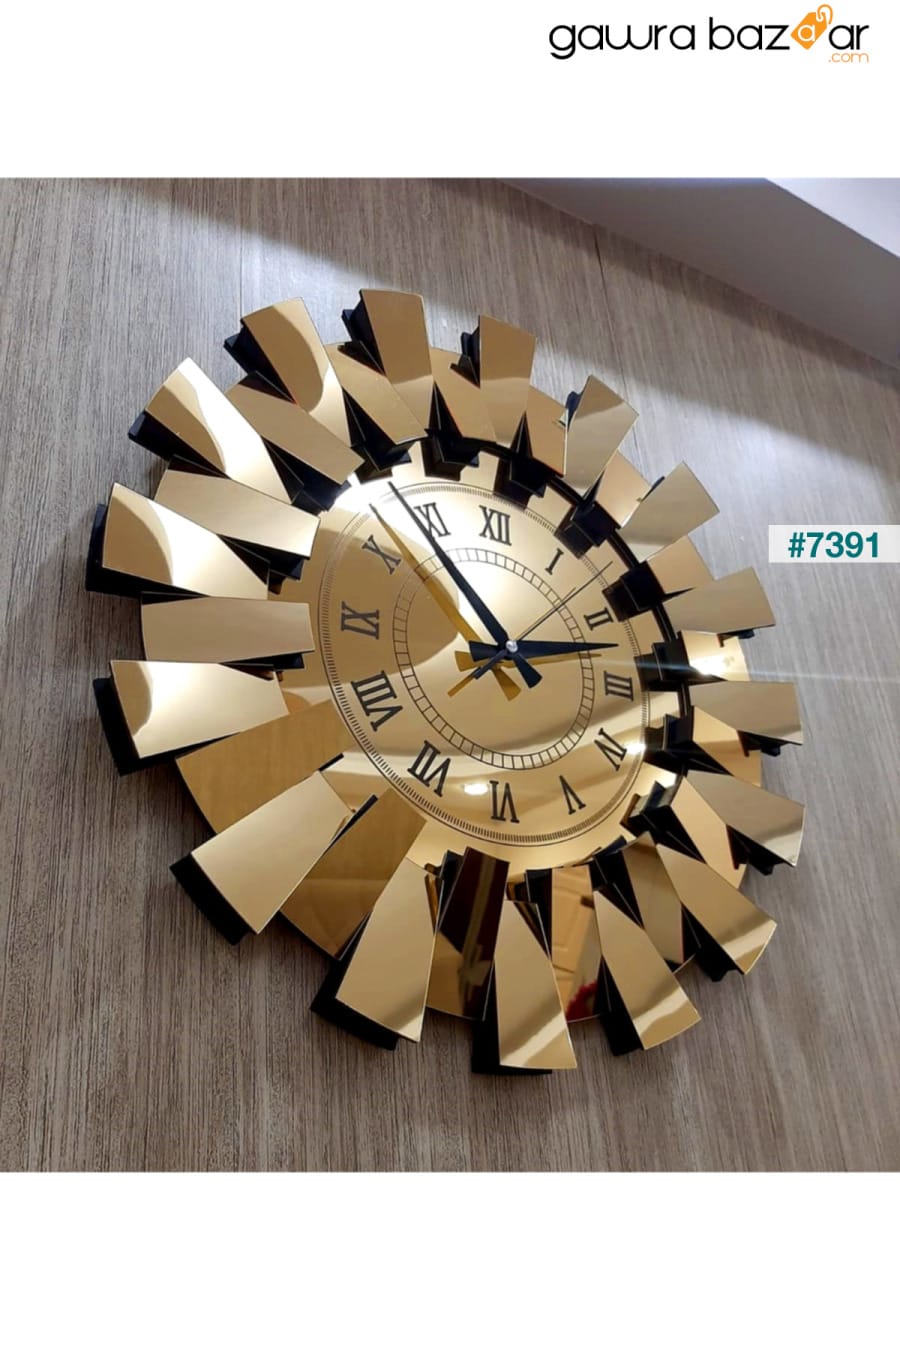 نموذج بيانو ثلاثي الأبعاد ساعة حائط معكوسة أرقام رومانية ذهبية TUĞBArt 0